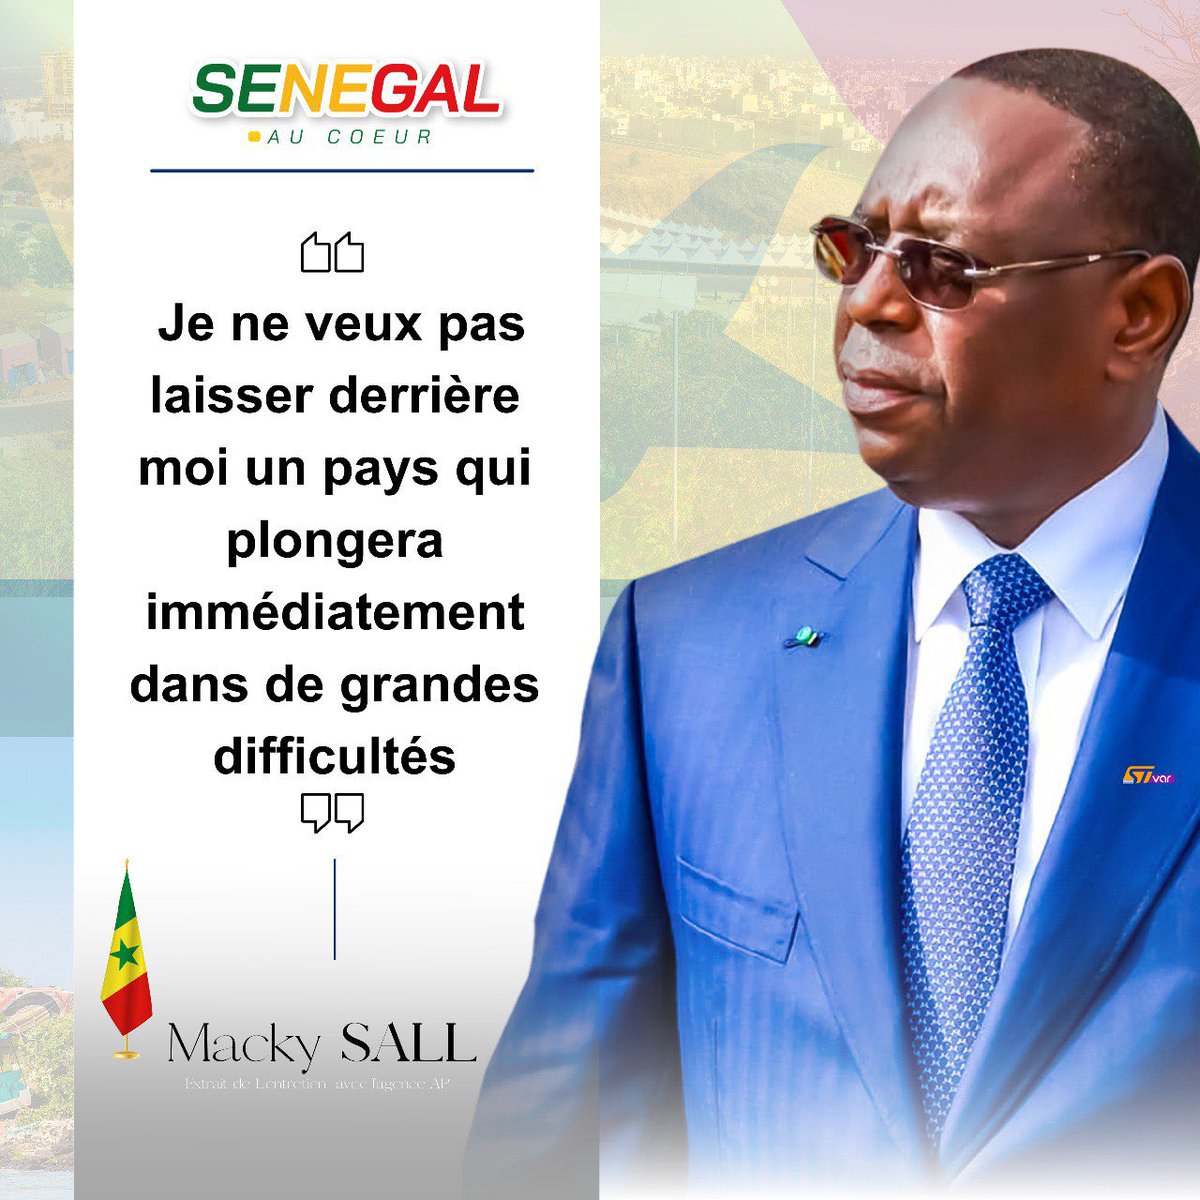 Un homme de paix et de stabilité 🇸🇳

#FreeSenegal #CoteDIvoire #DialogueNational #OuiAuReport